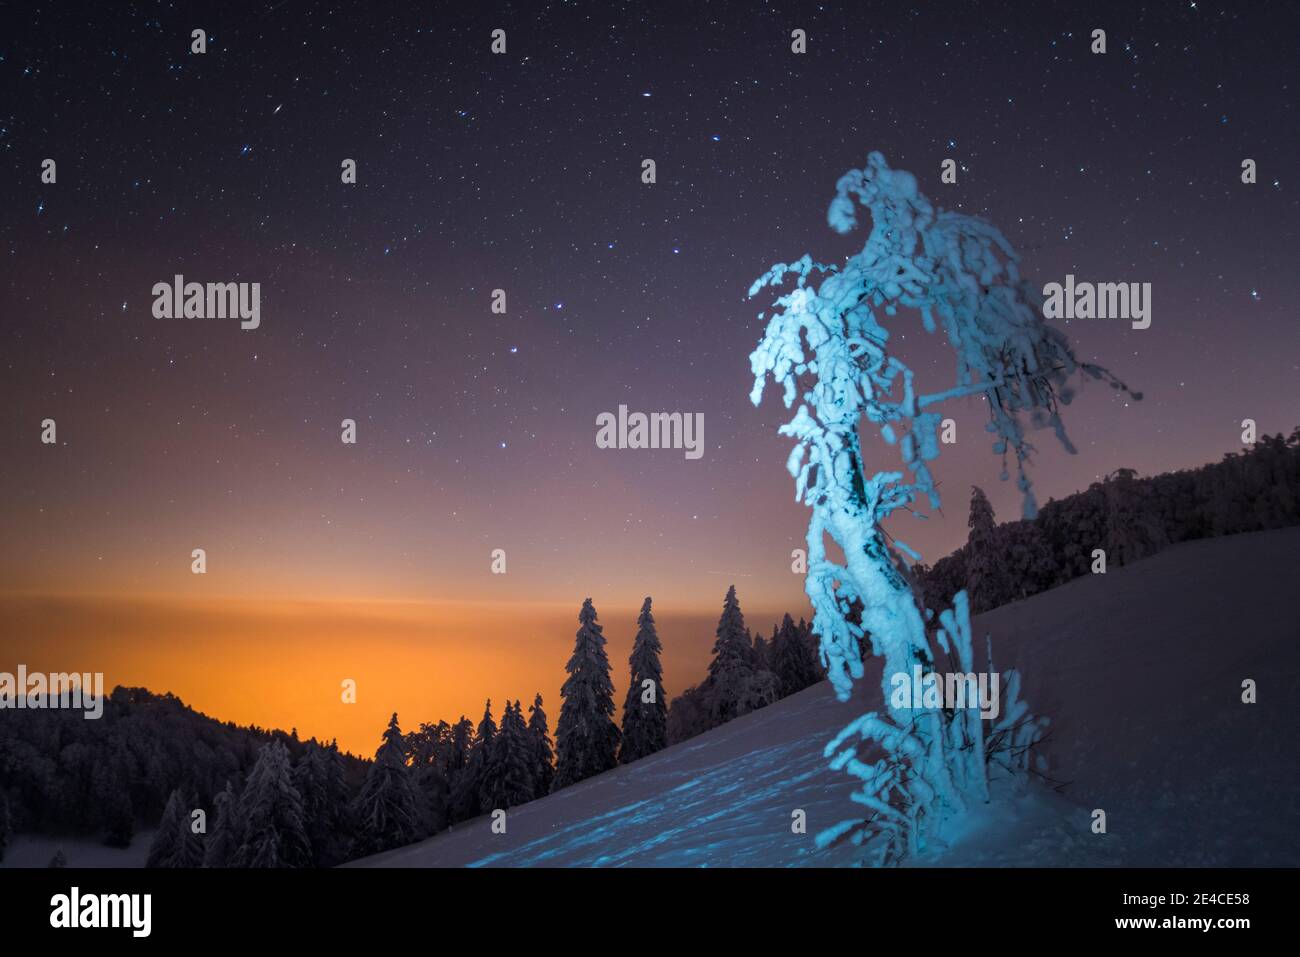 Weihnachtsstimmung, frisch verschneite Landschaft unter dem Sternenhimmel Stockfoto